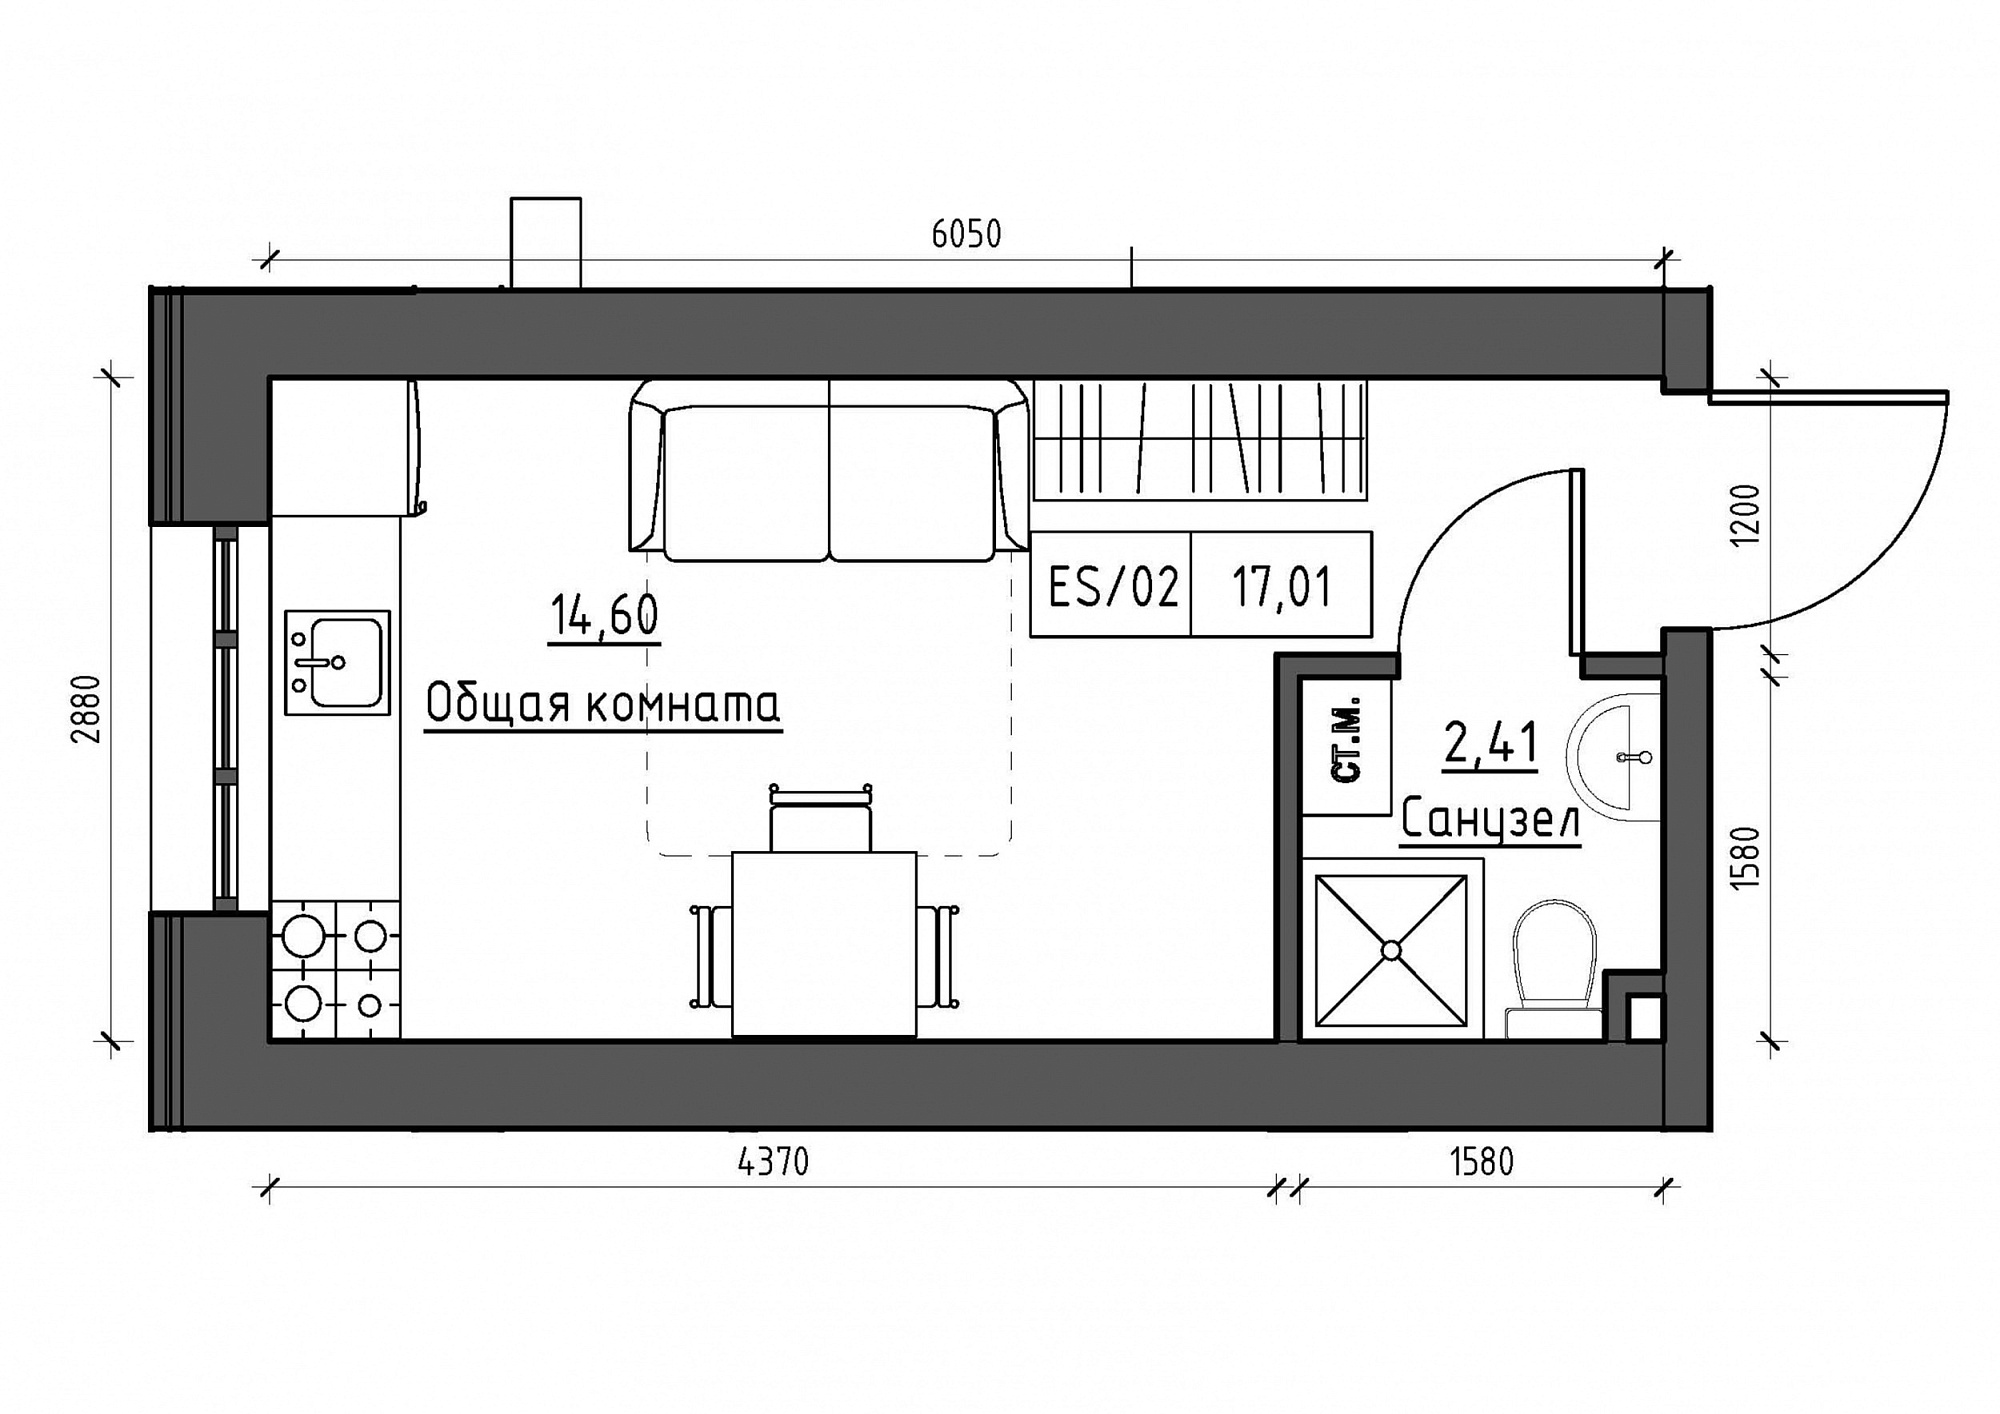 Планування Smart-квартира площею 17.01м2, KS-011-01/0002.